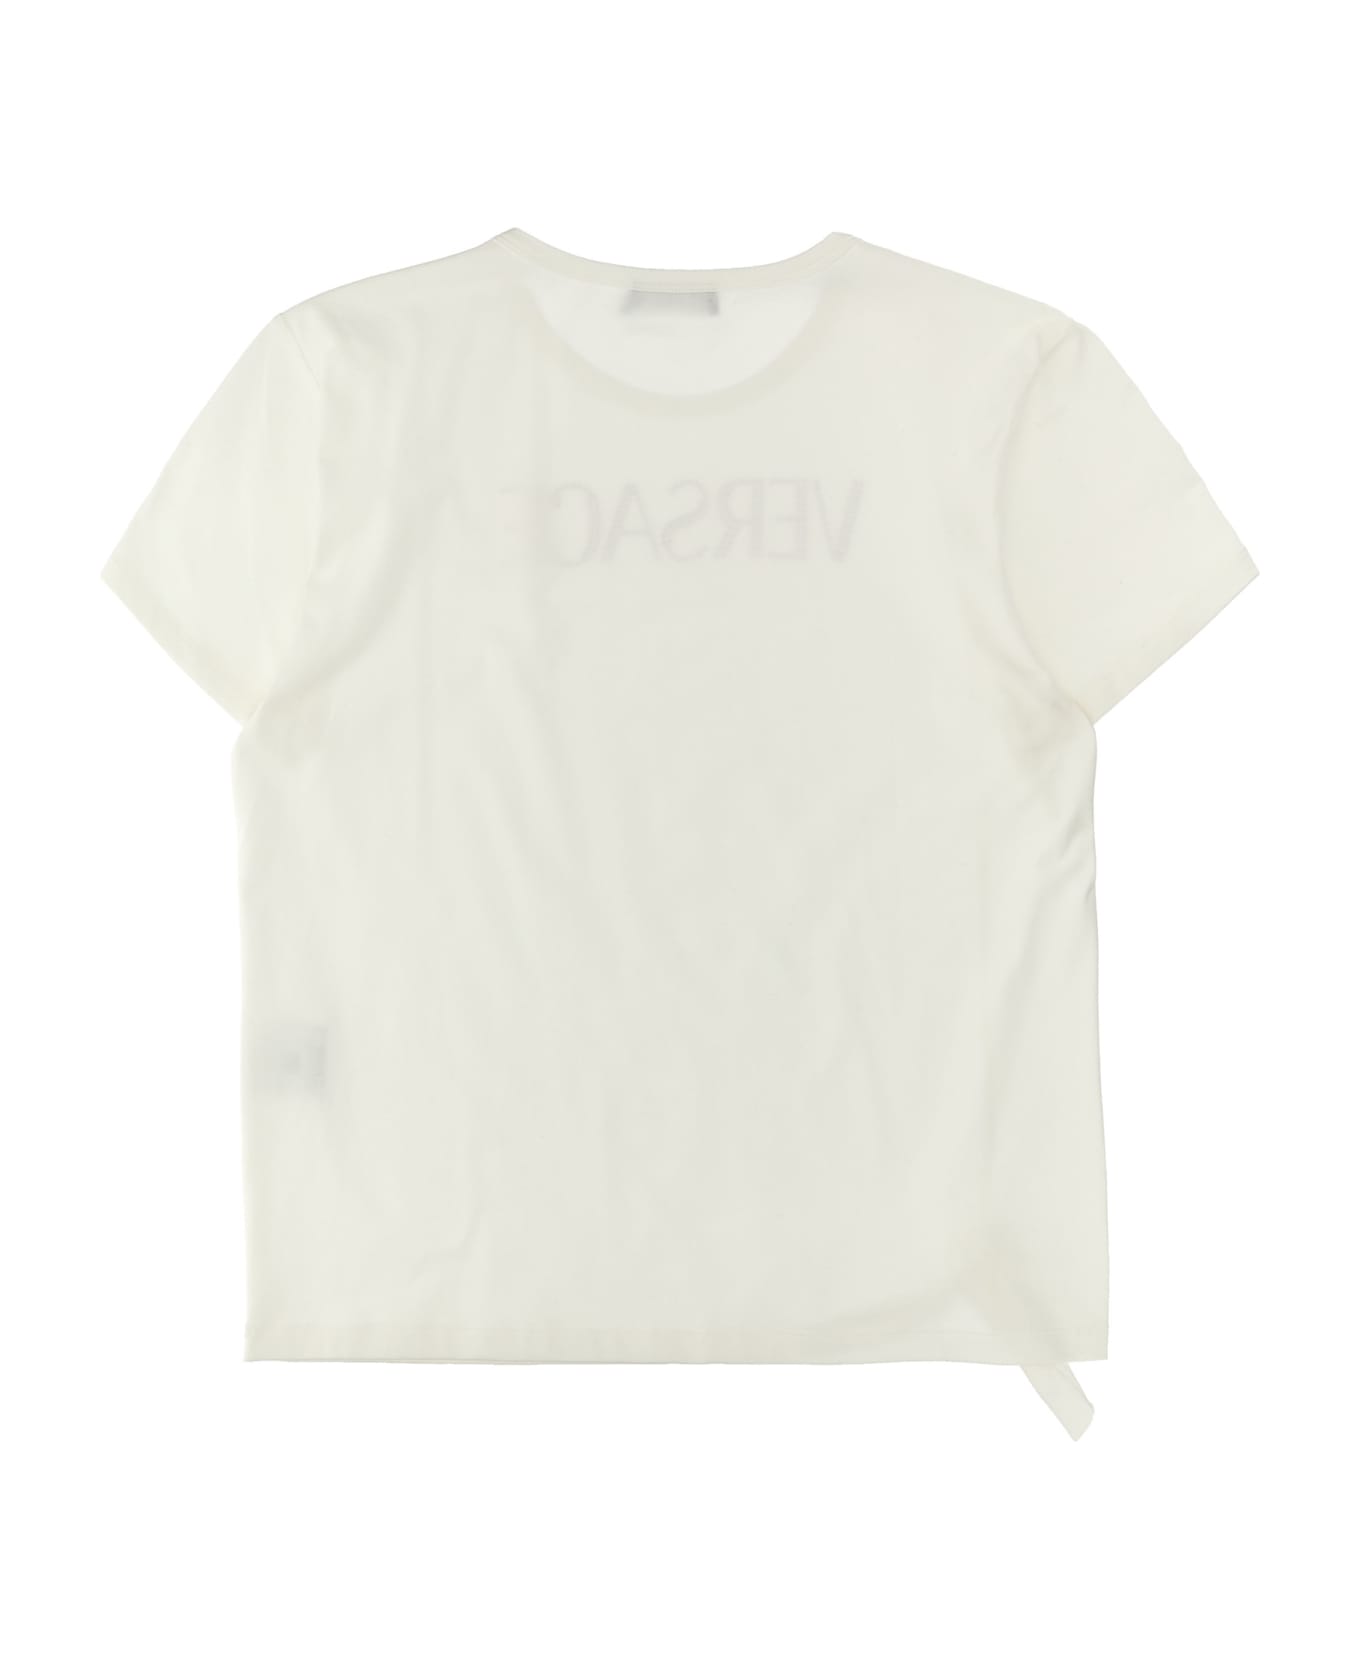 Versace Rhinestone Logo T-shirt - Bianco